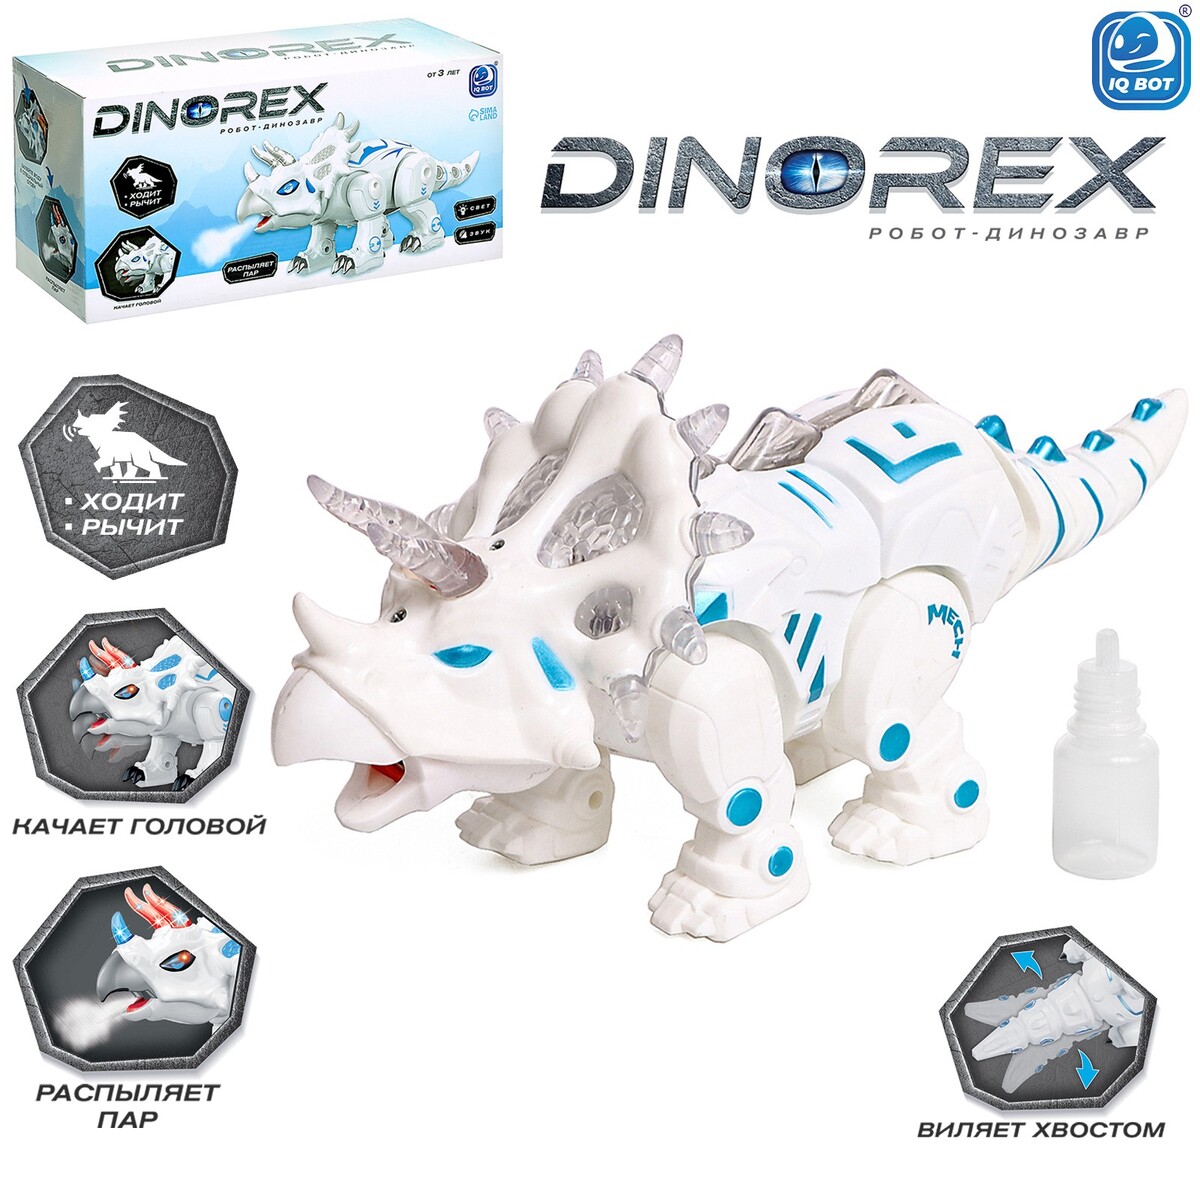 Робот динозавр dinorex iq bot, интерактивный: световые и звуковые эффекты, на батарейках junfa робот трансформер световые и звуковые эффекты